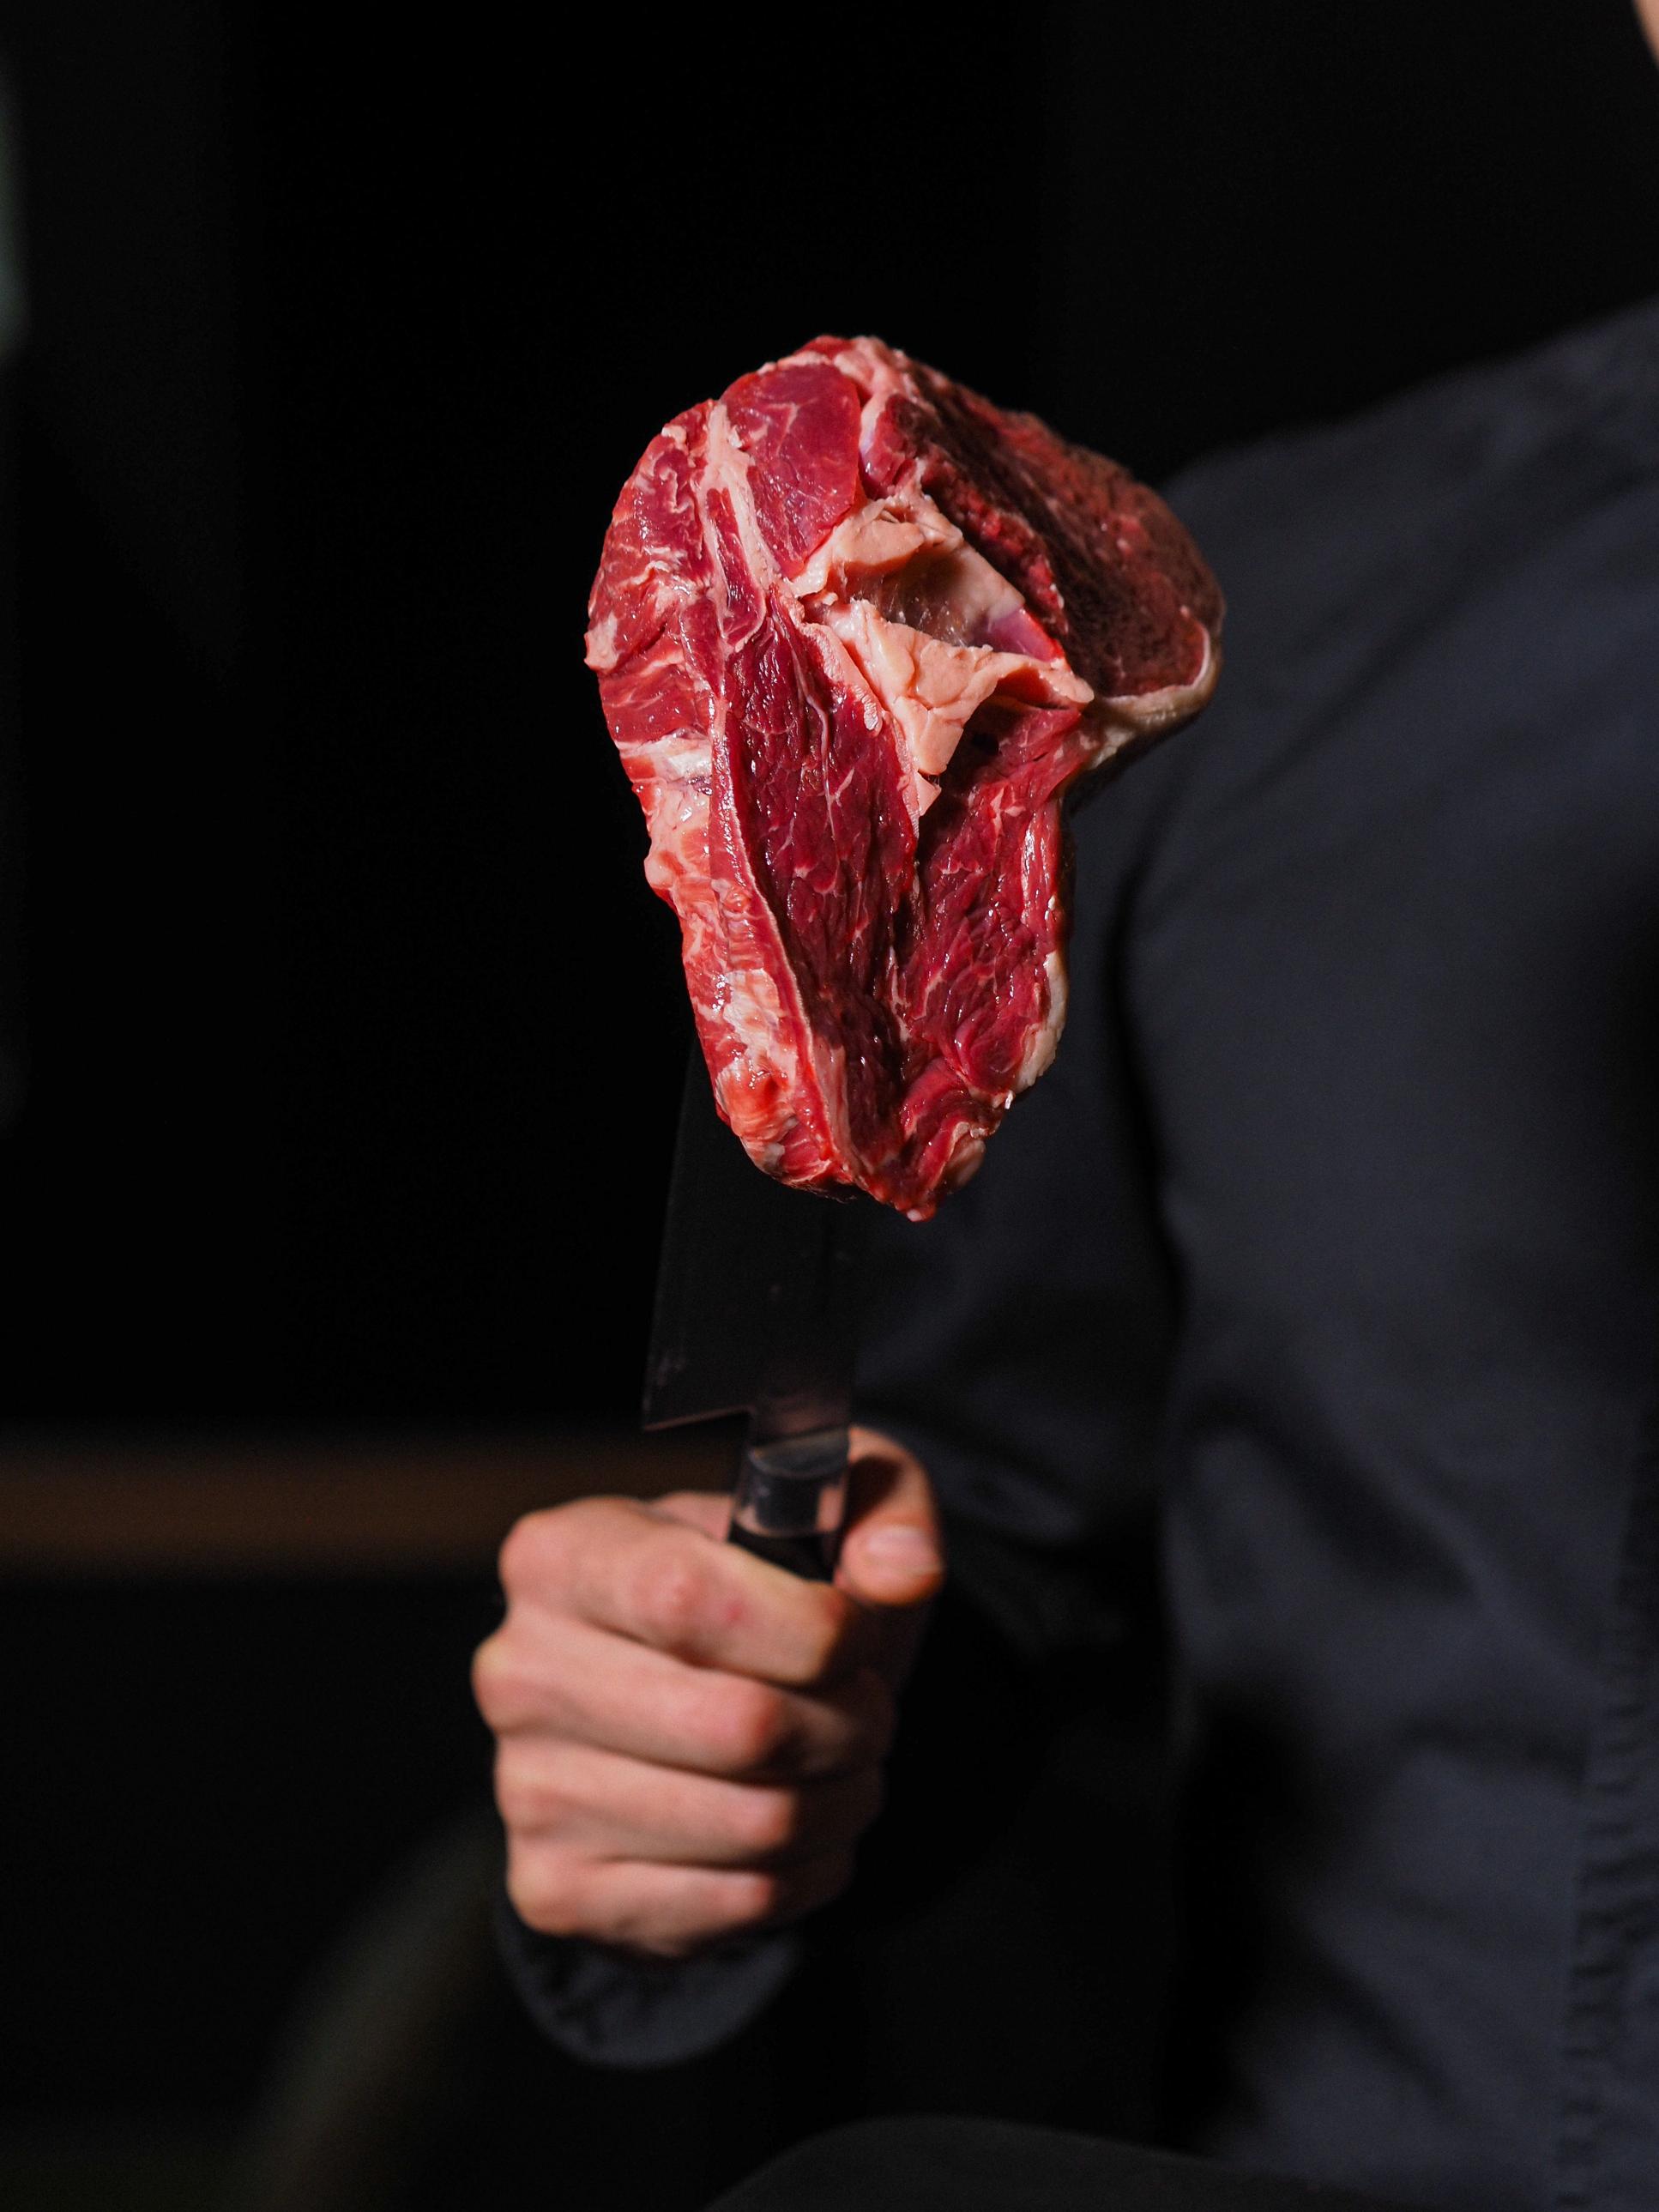 Przygotowanie mięsa – sekrety idealnych ćevapčići